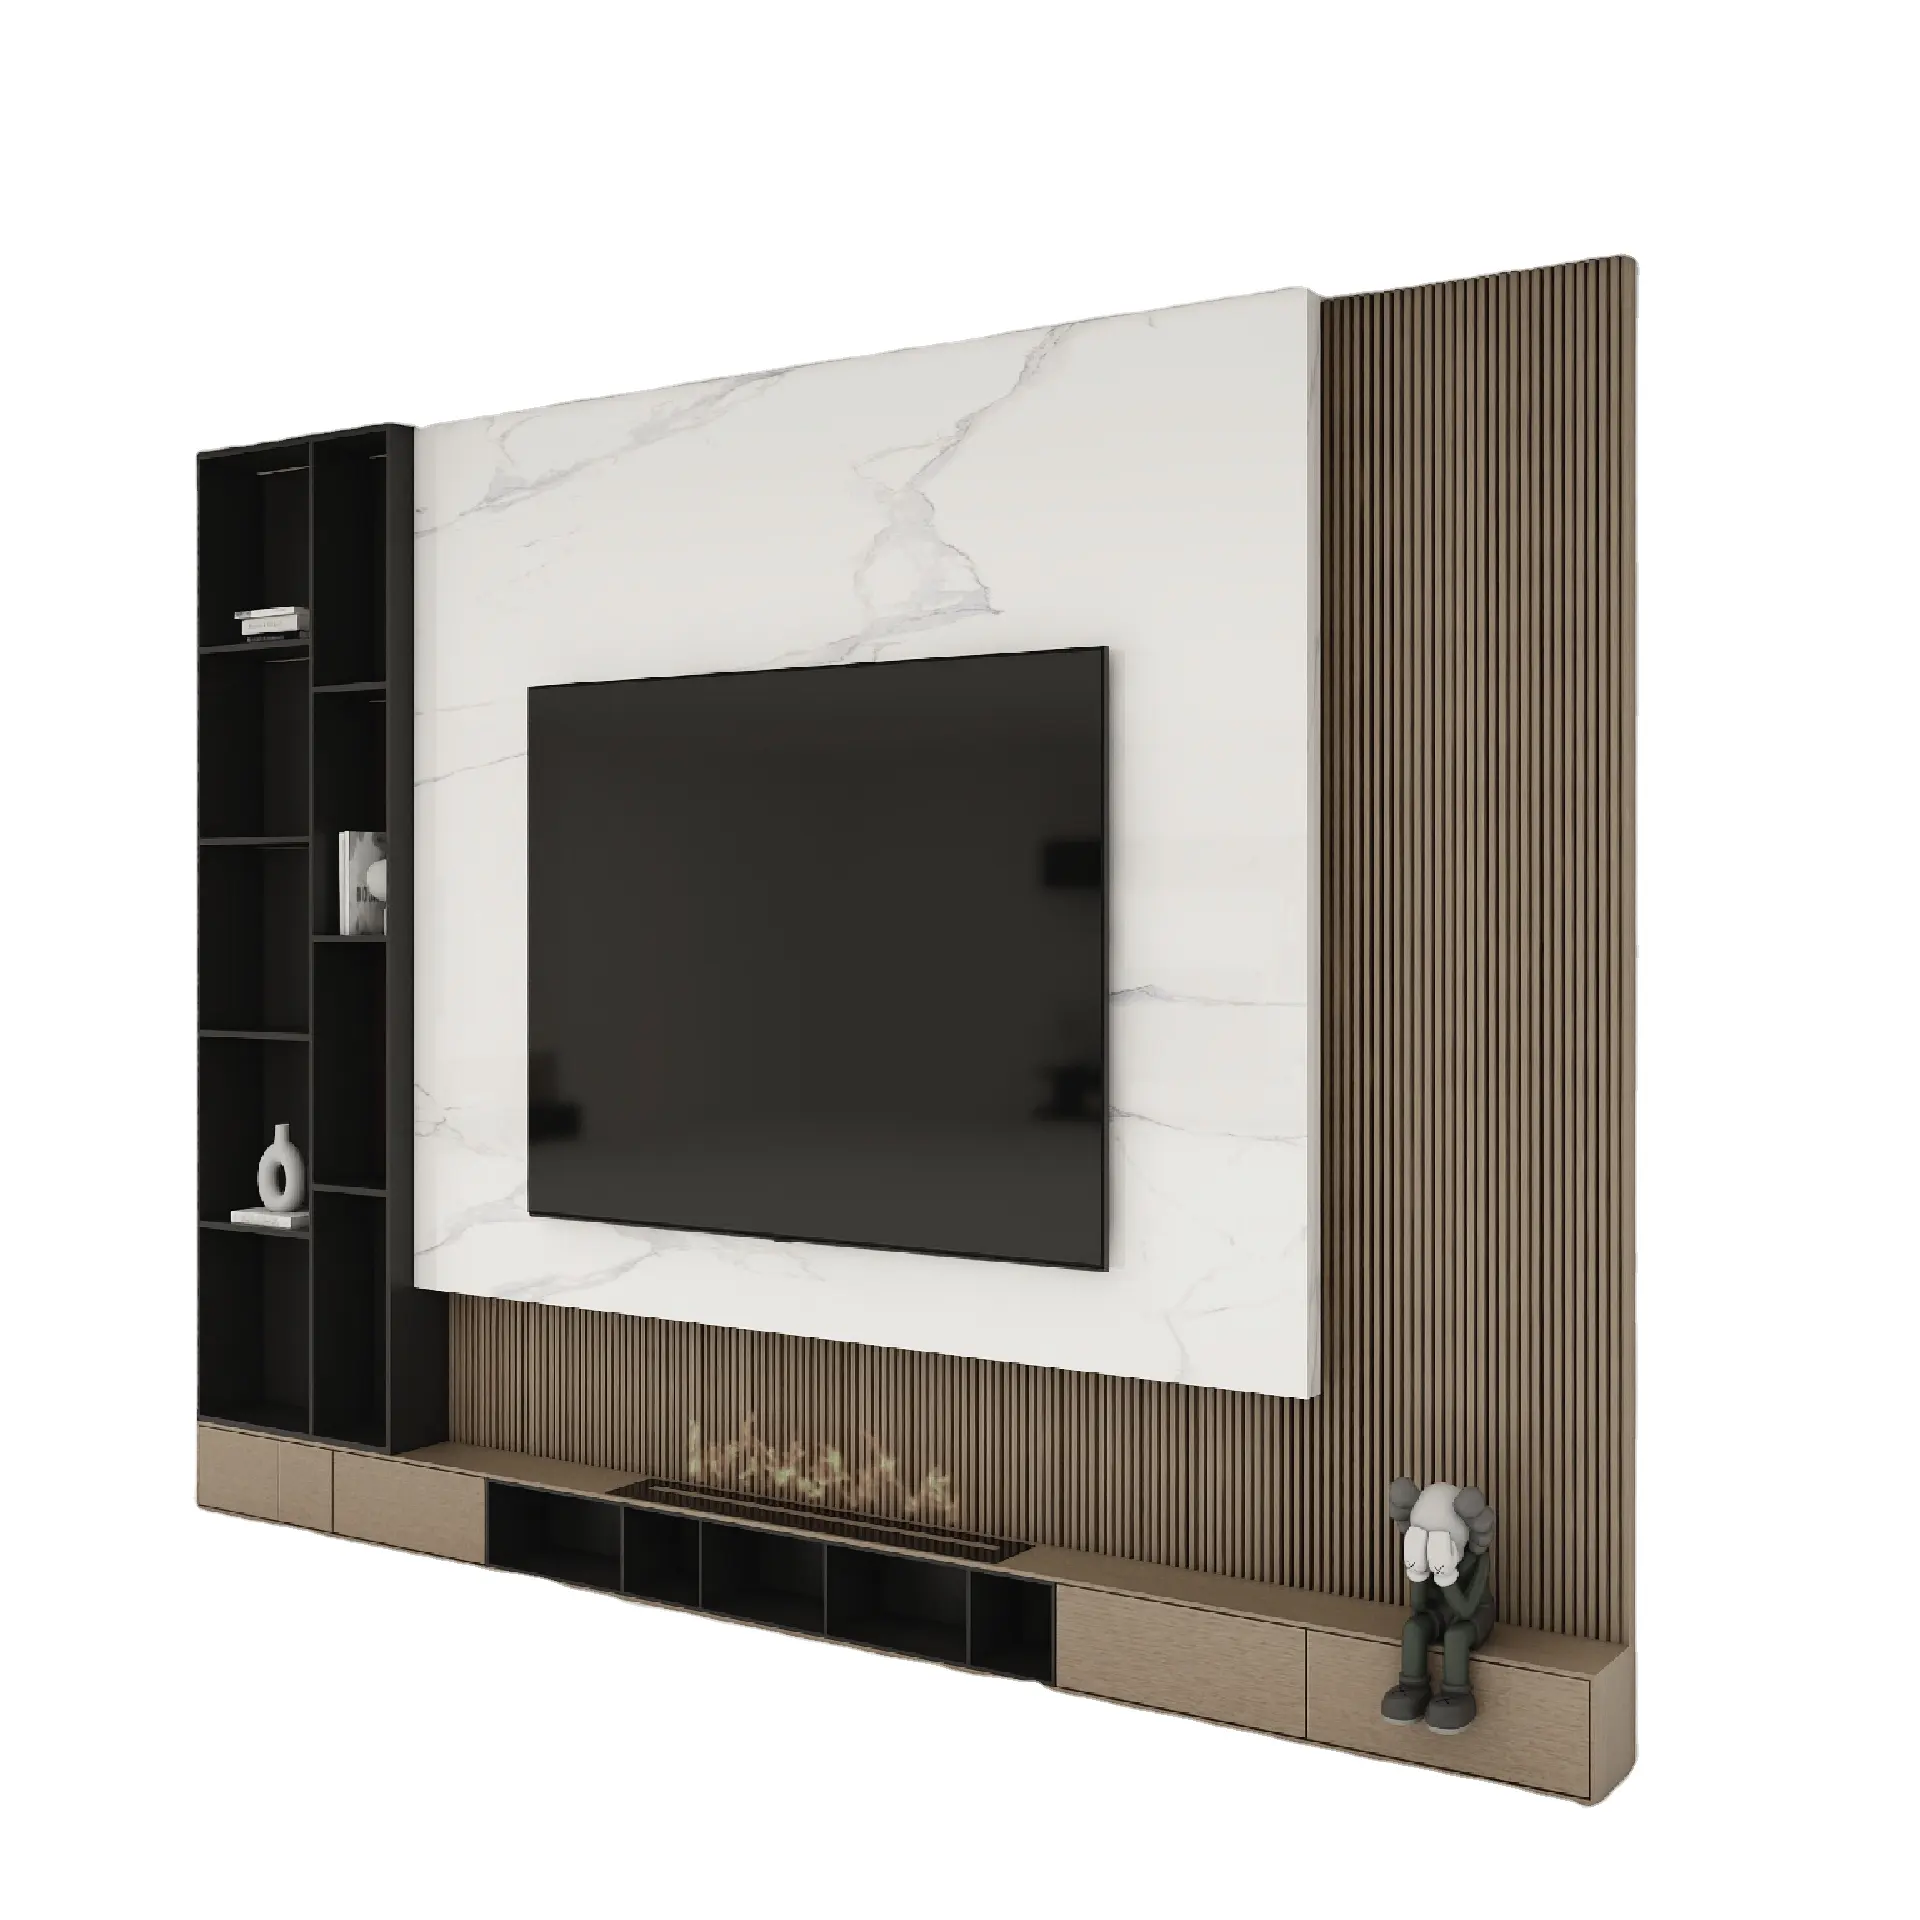 O mais recente armário TV estilo luxo luz com gavetas na cor madeira natural adequado para salas de estar